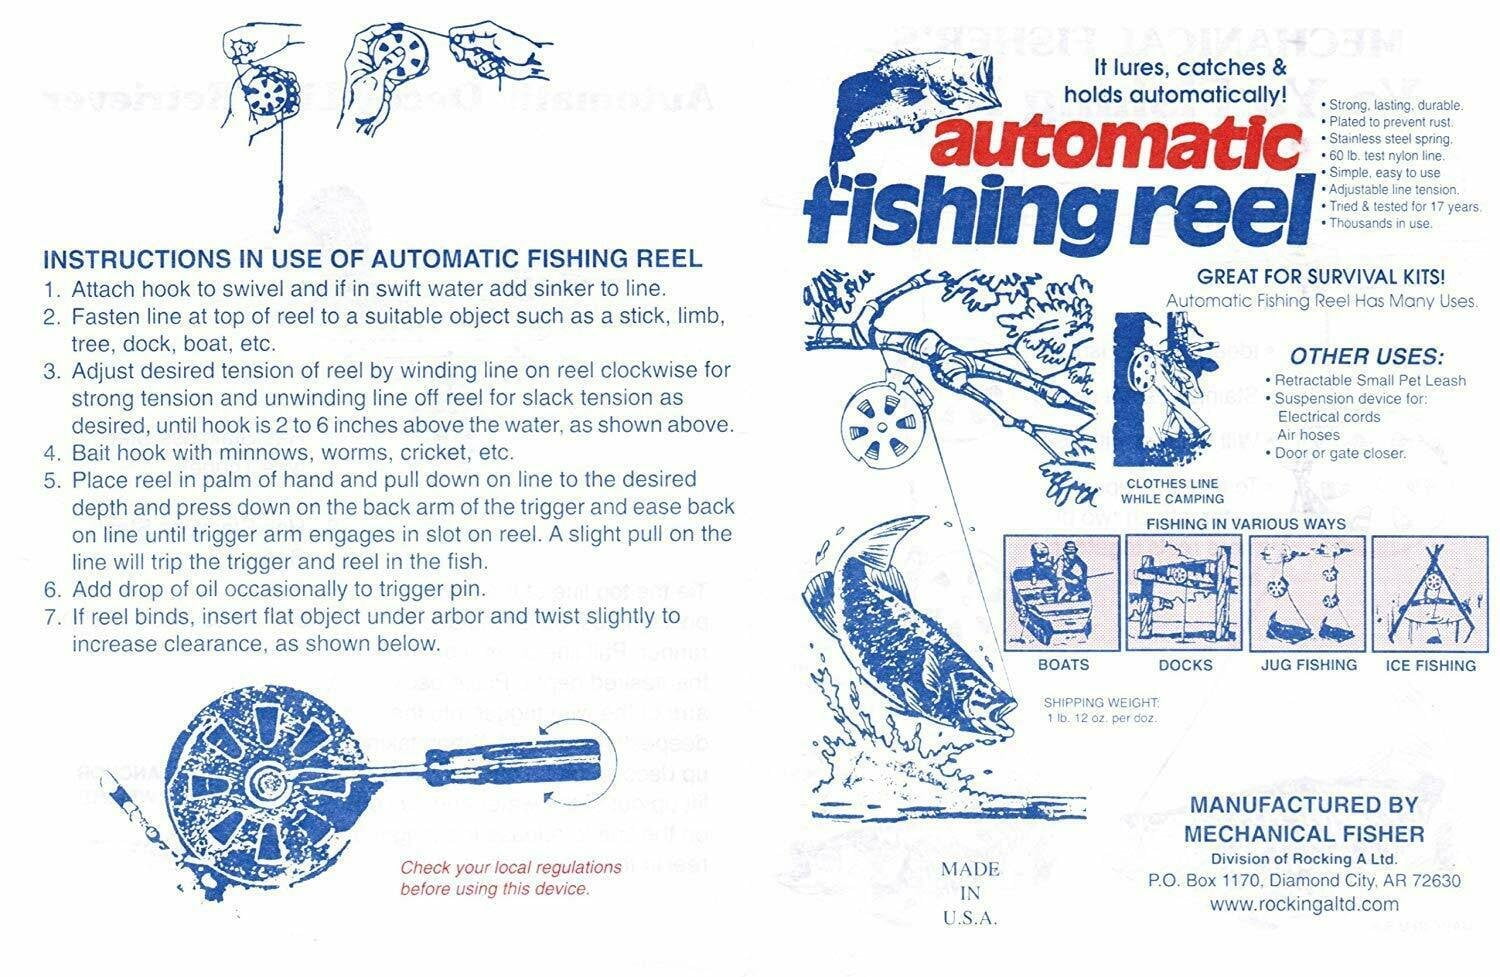 Mechanical Fisher Yo-Yo Automatic Fishing Reels, 12-Pack 